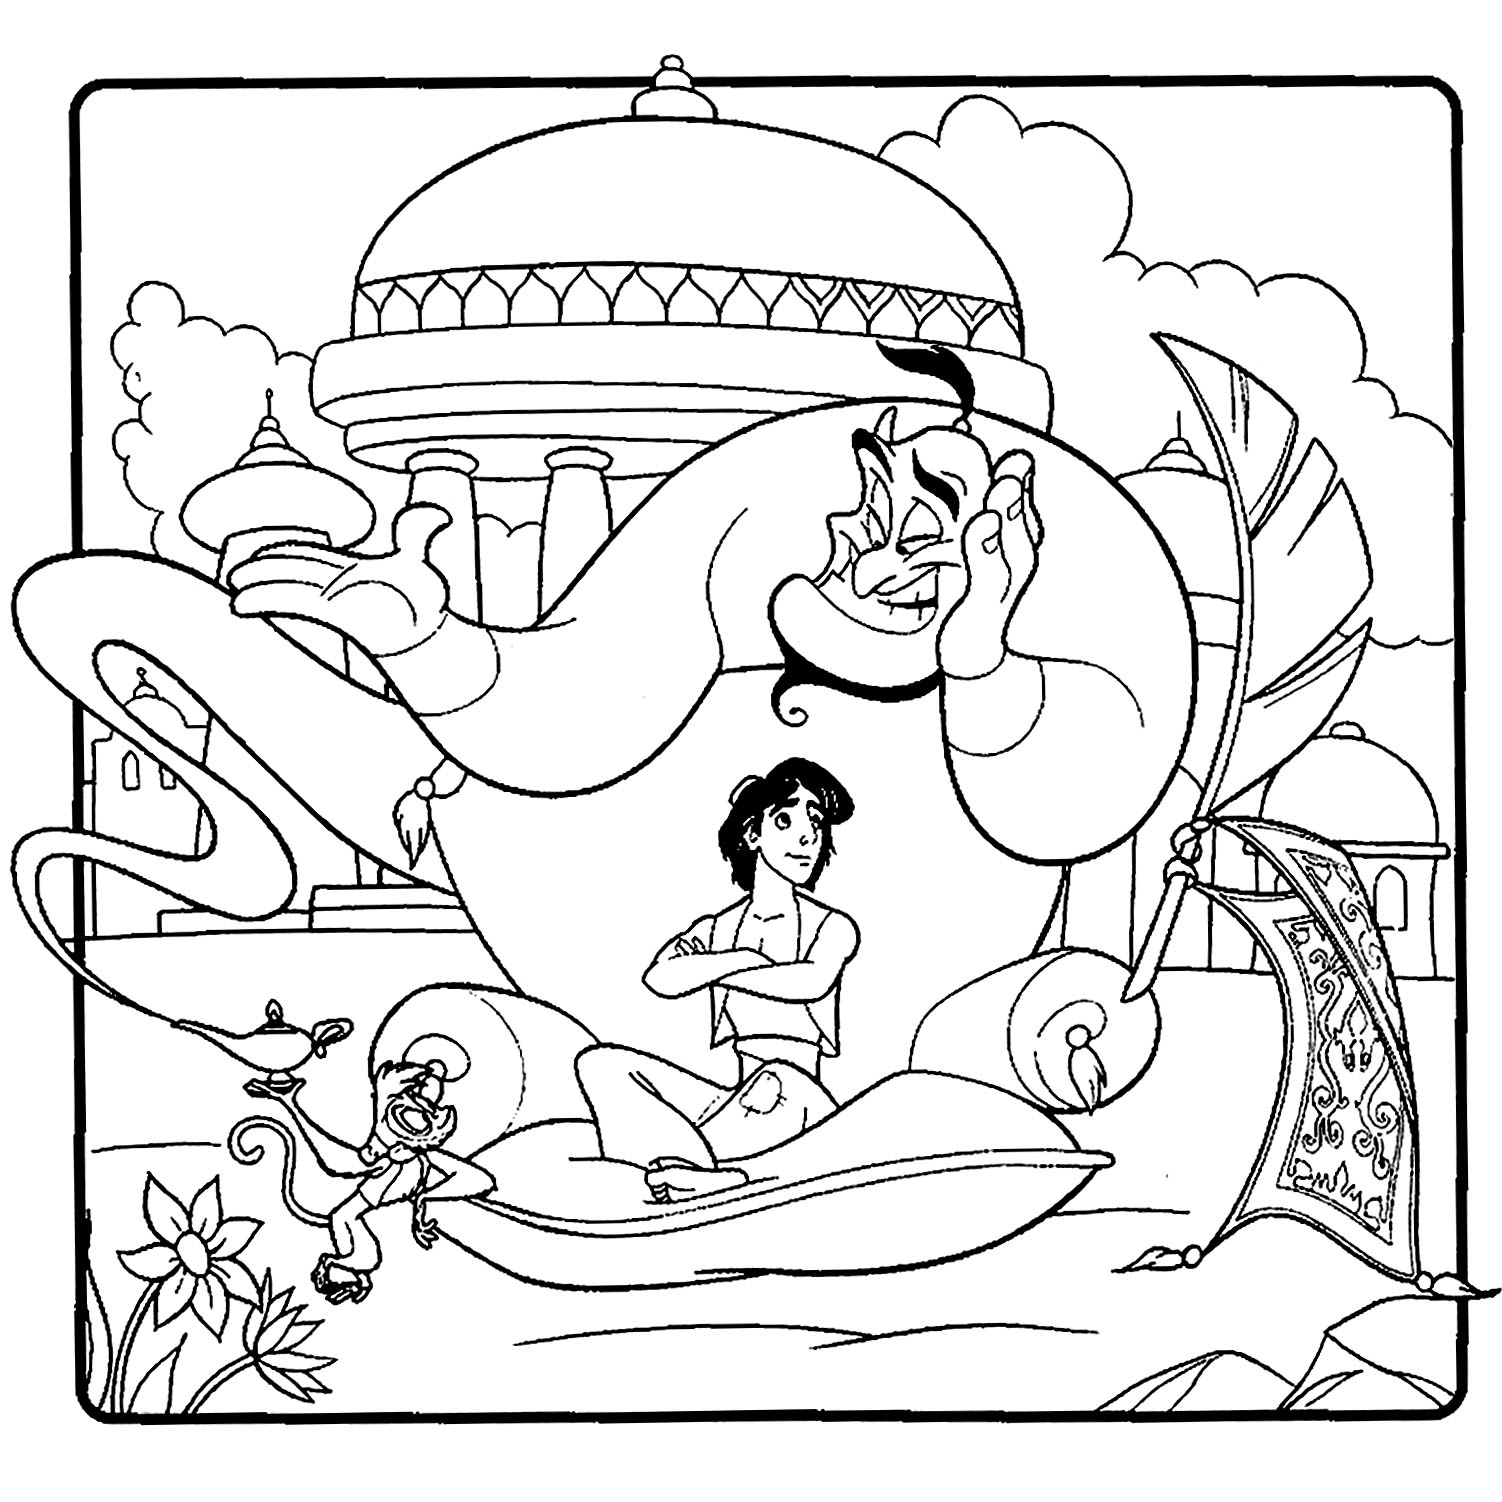 Aladdin and jasmine to color for children - Aladdin (and Jasmine) Kids